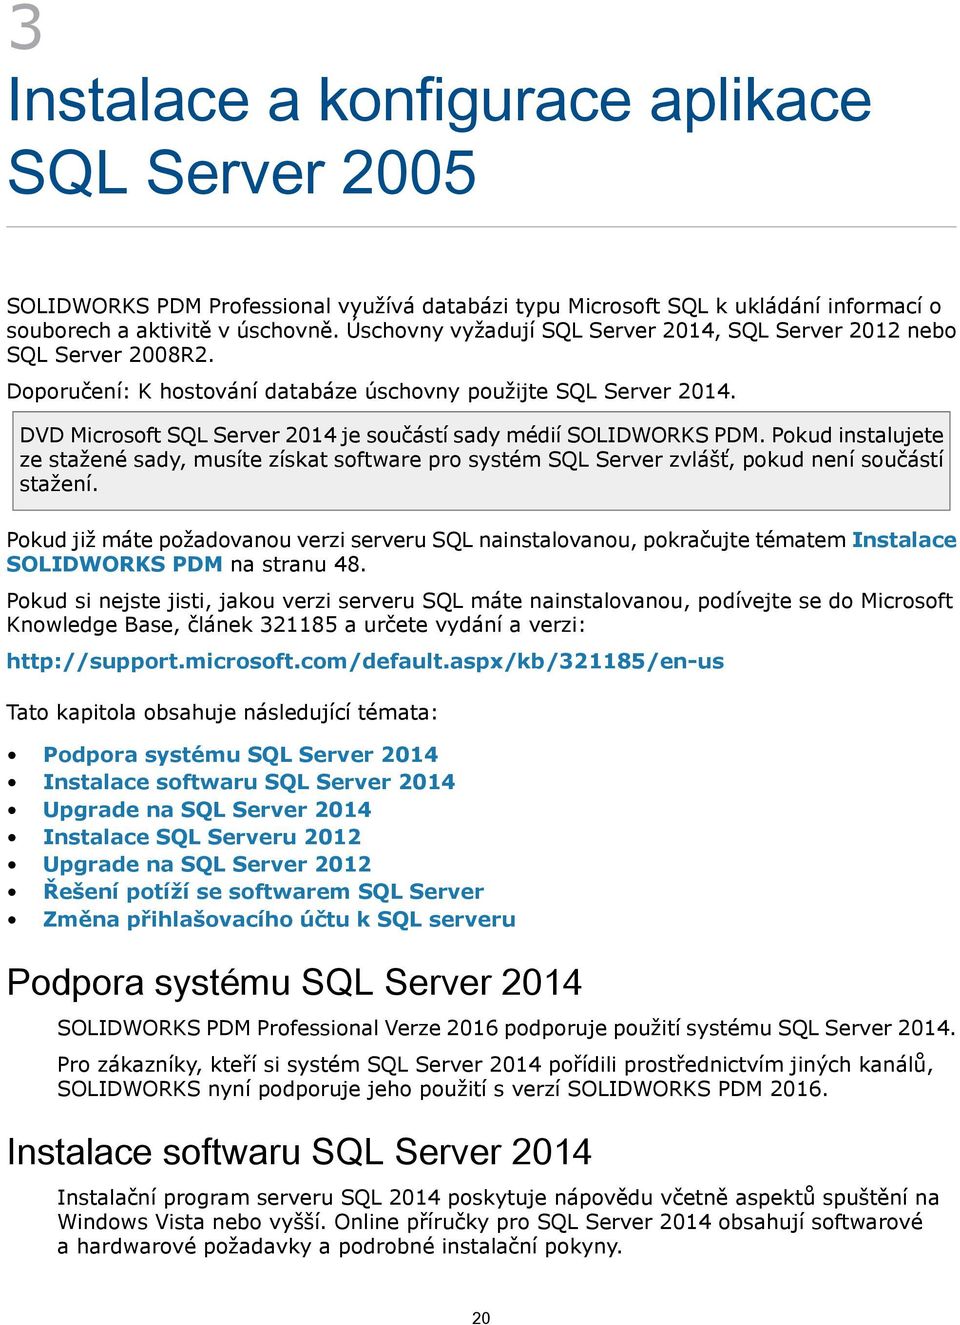 DVD Microsoft SQL Server 2014 je součástí sady médií SOLIDWORKS PDM. Pokud instalujete ze stažené sady, musíte získat software pro systém SQL Server zvlášť, pokud není součástí stažení.